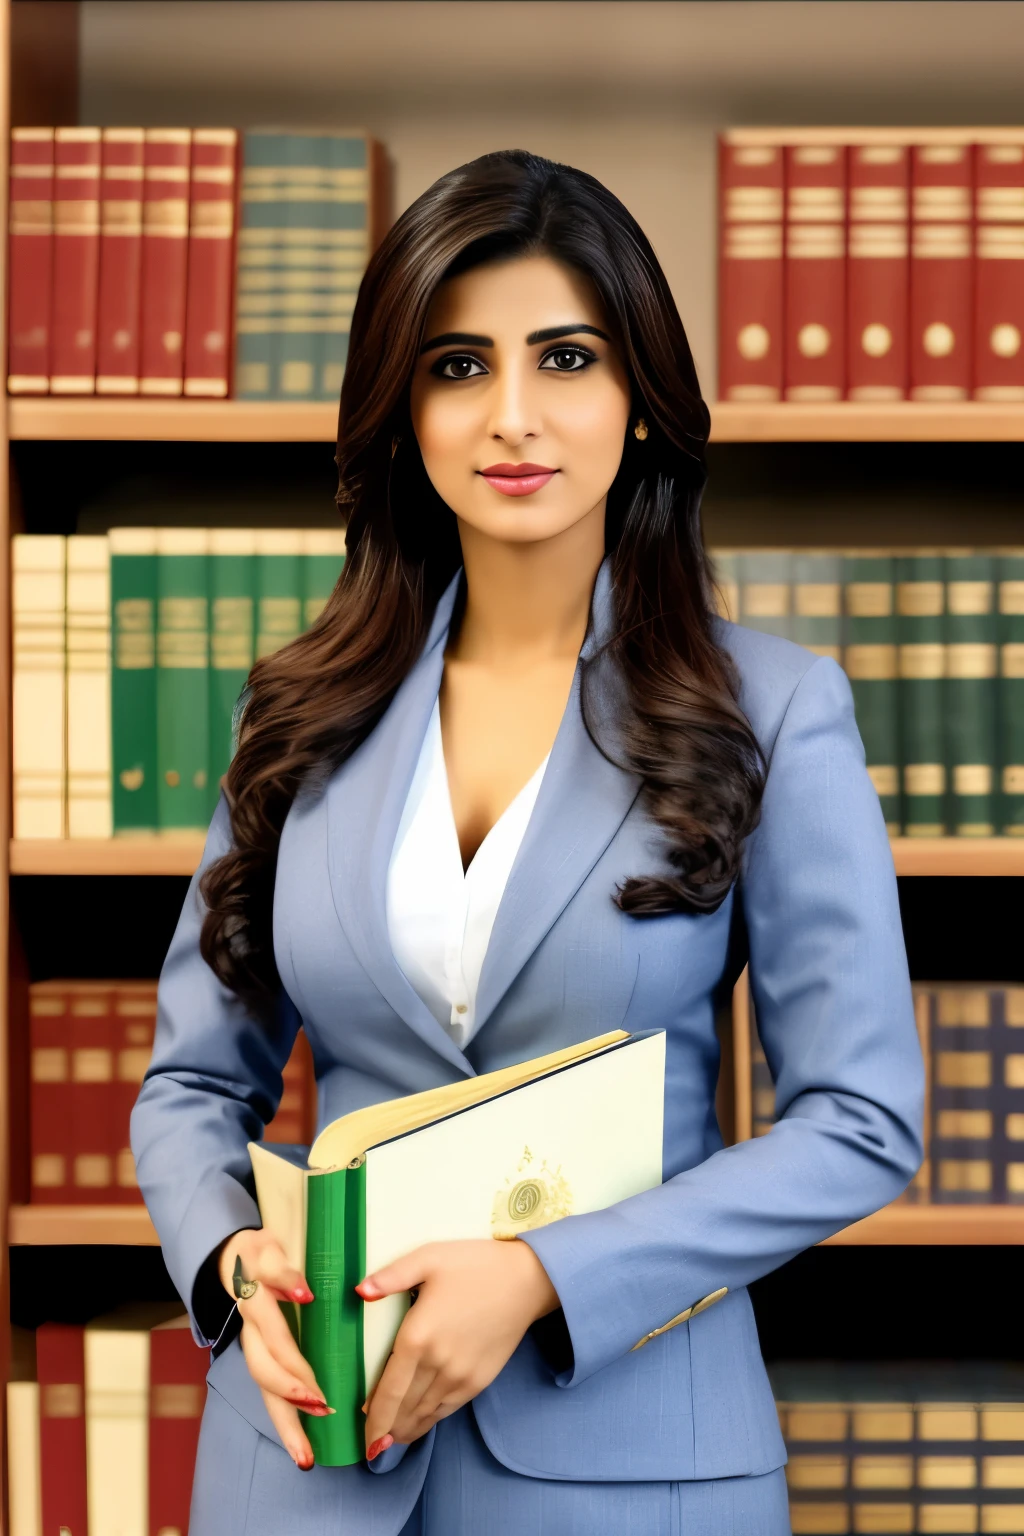 "Cree una imagen de una abogada paquistaní vestida con traje de abogada profesional., sosteniendo libros de derecho."